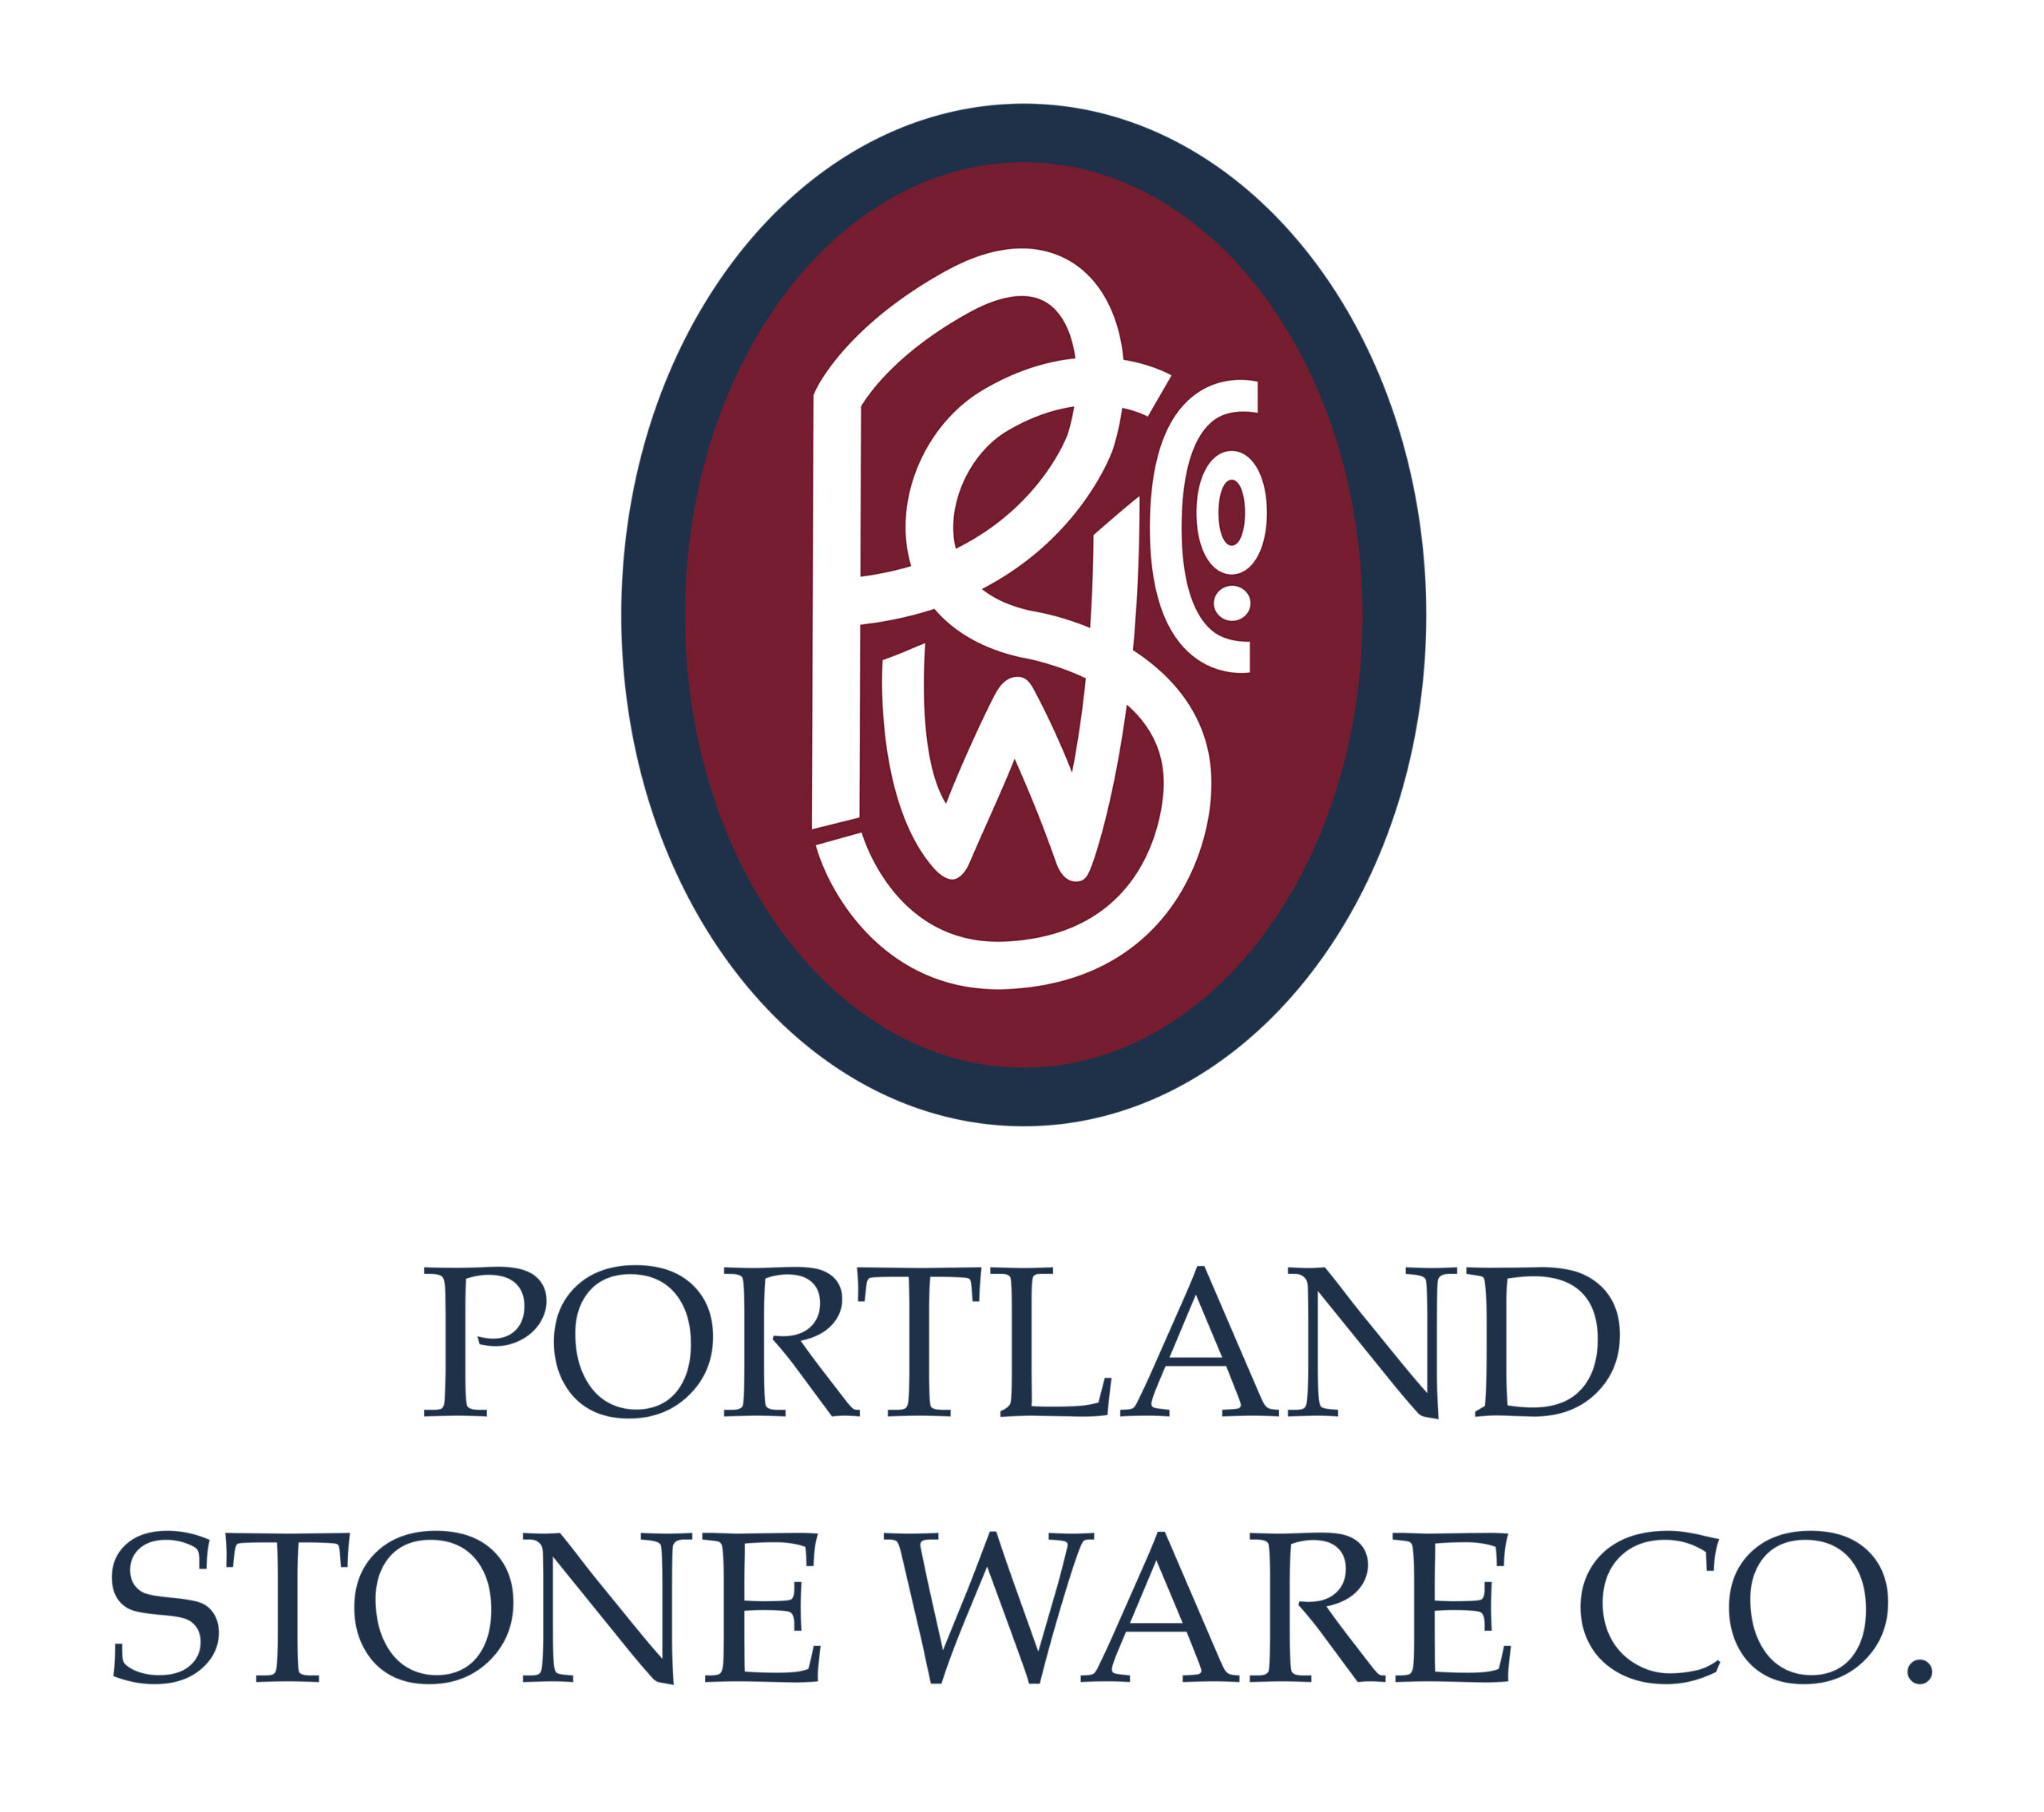 Portland stone ware